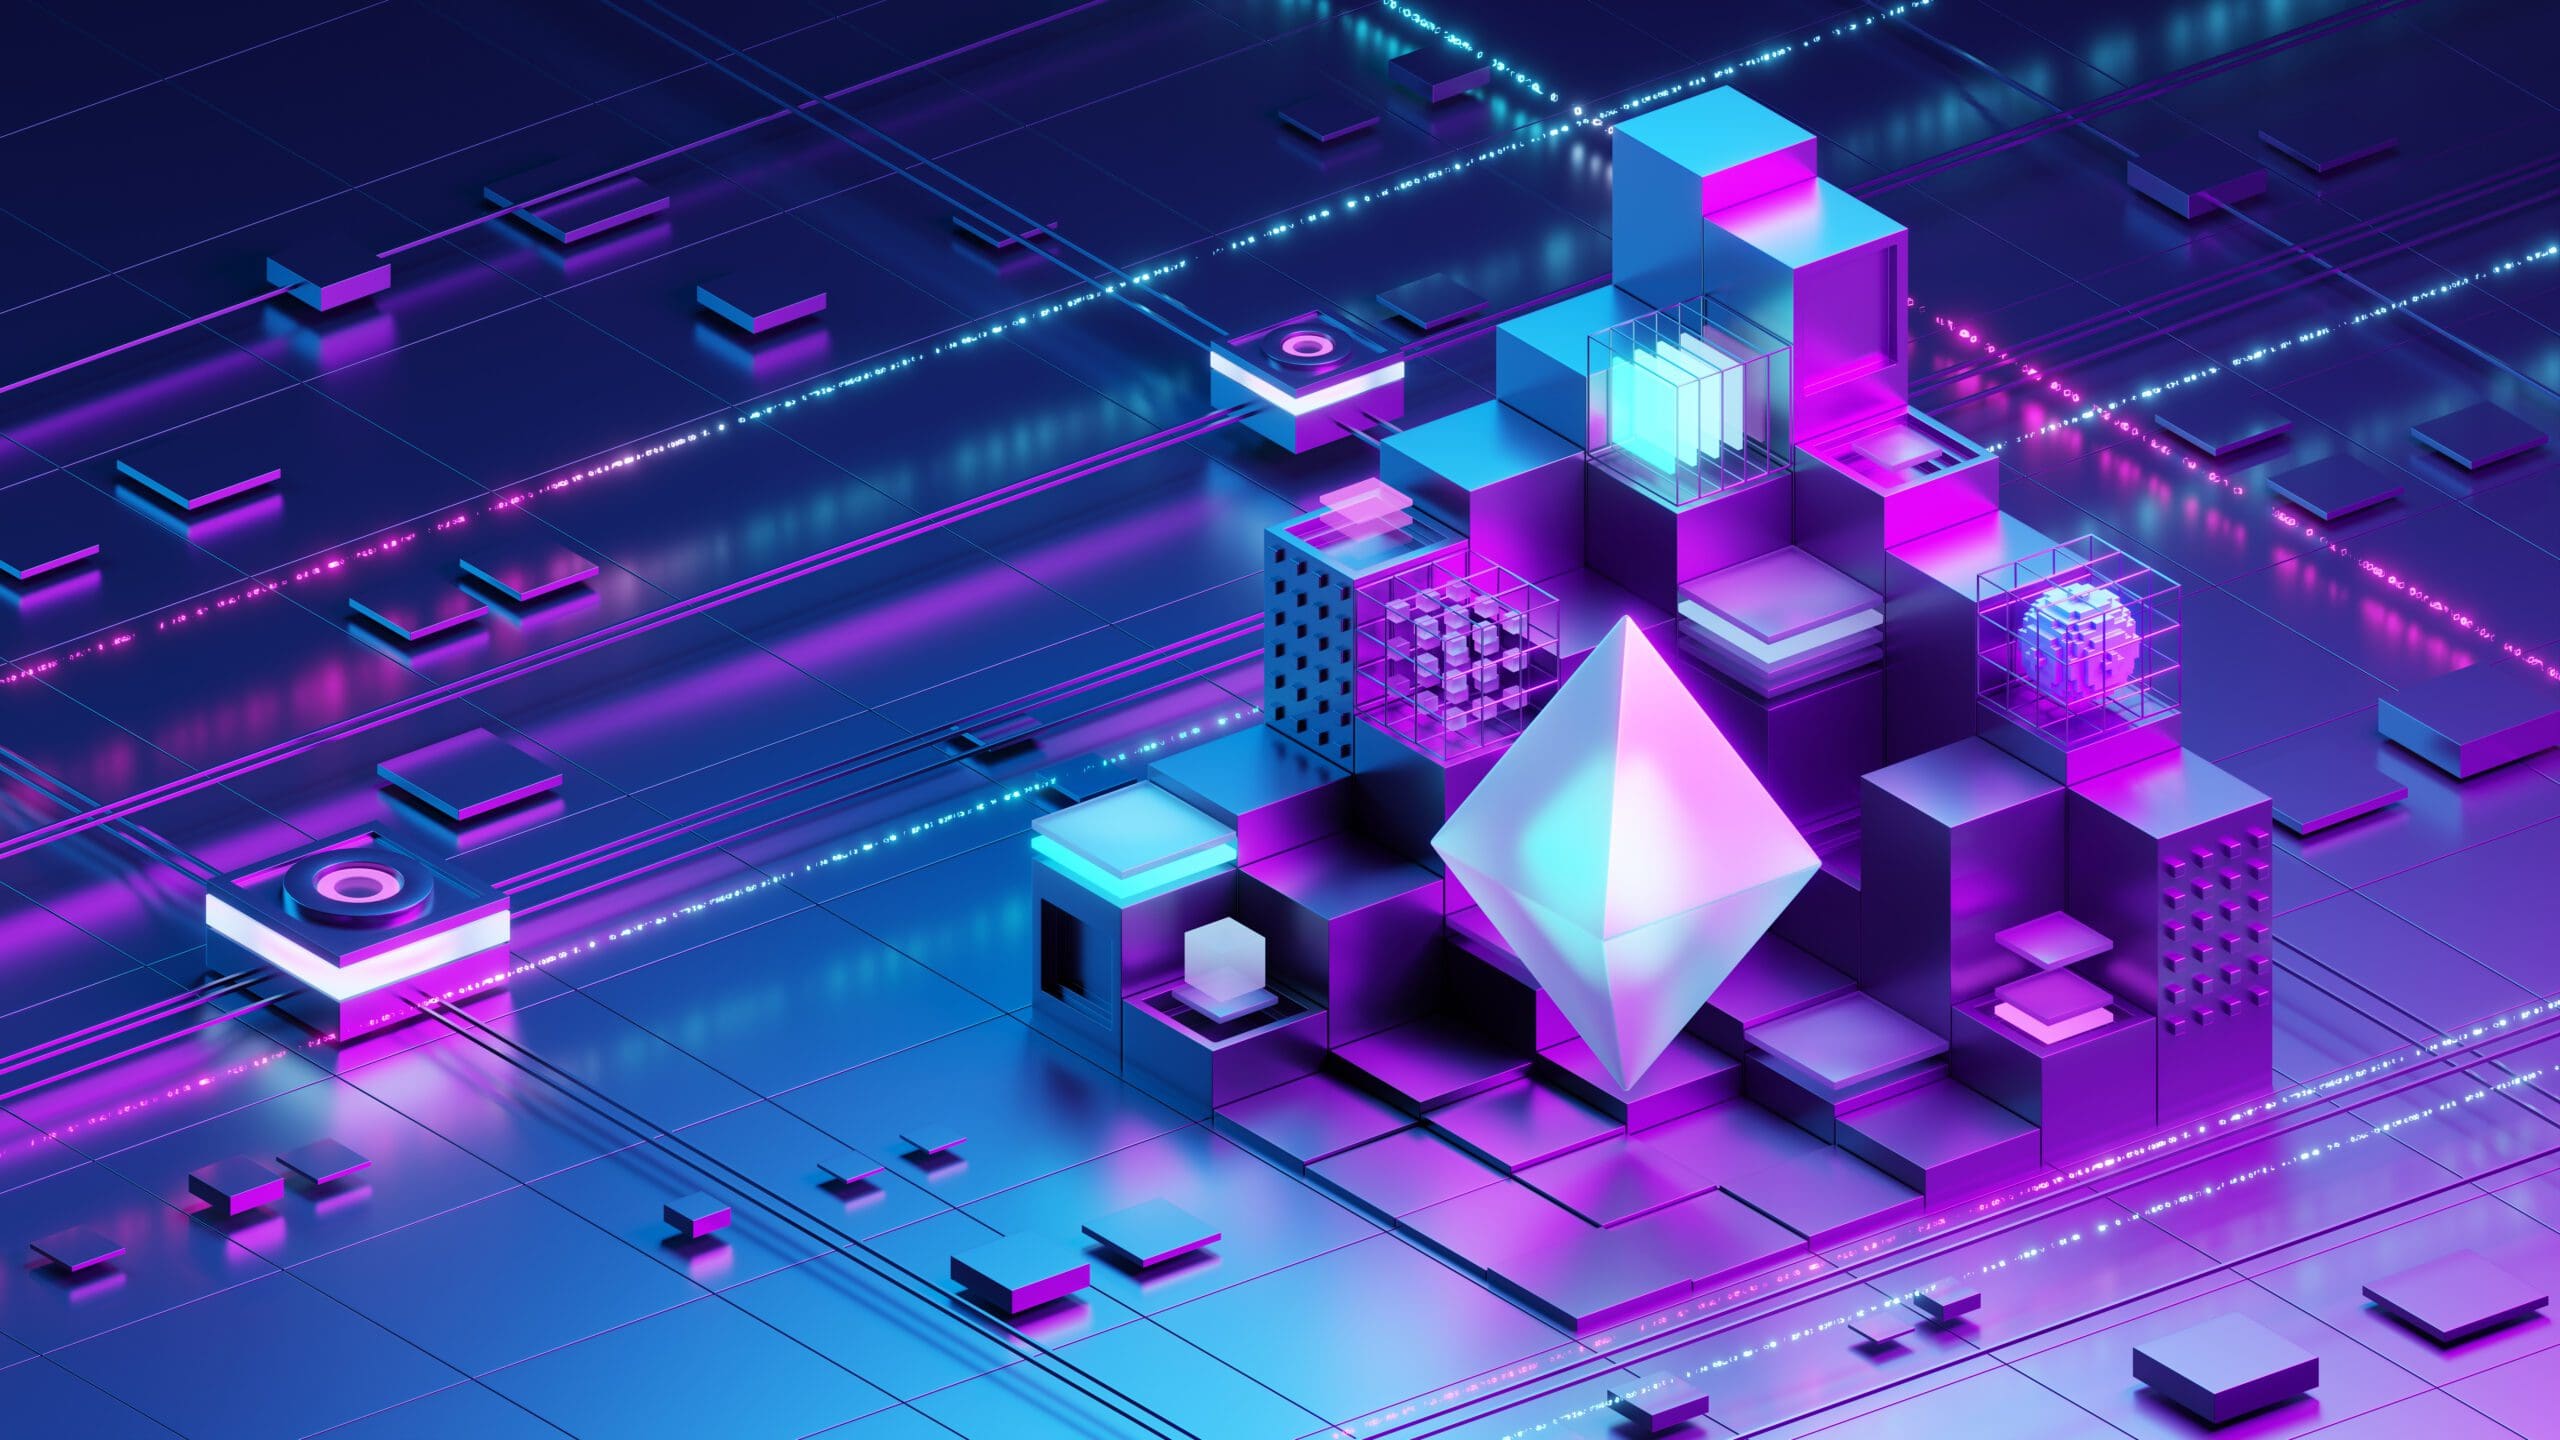 Eine futuristische 3D-Darstellung eines Ethereum-Logos im Zentrum eines Blockchain-Netzwerkes, umgeben von geometrischen Formen, die die Komplexität und Vernetzung der Blockchain-Technologie symbolisieren.